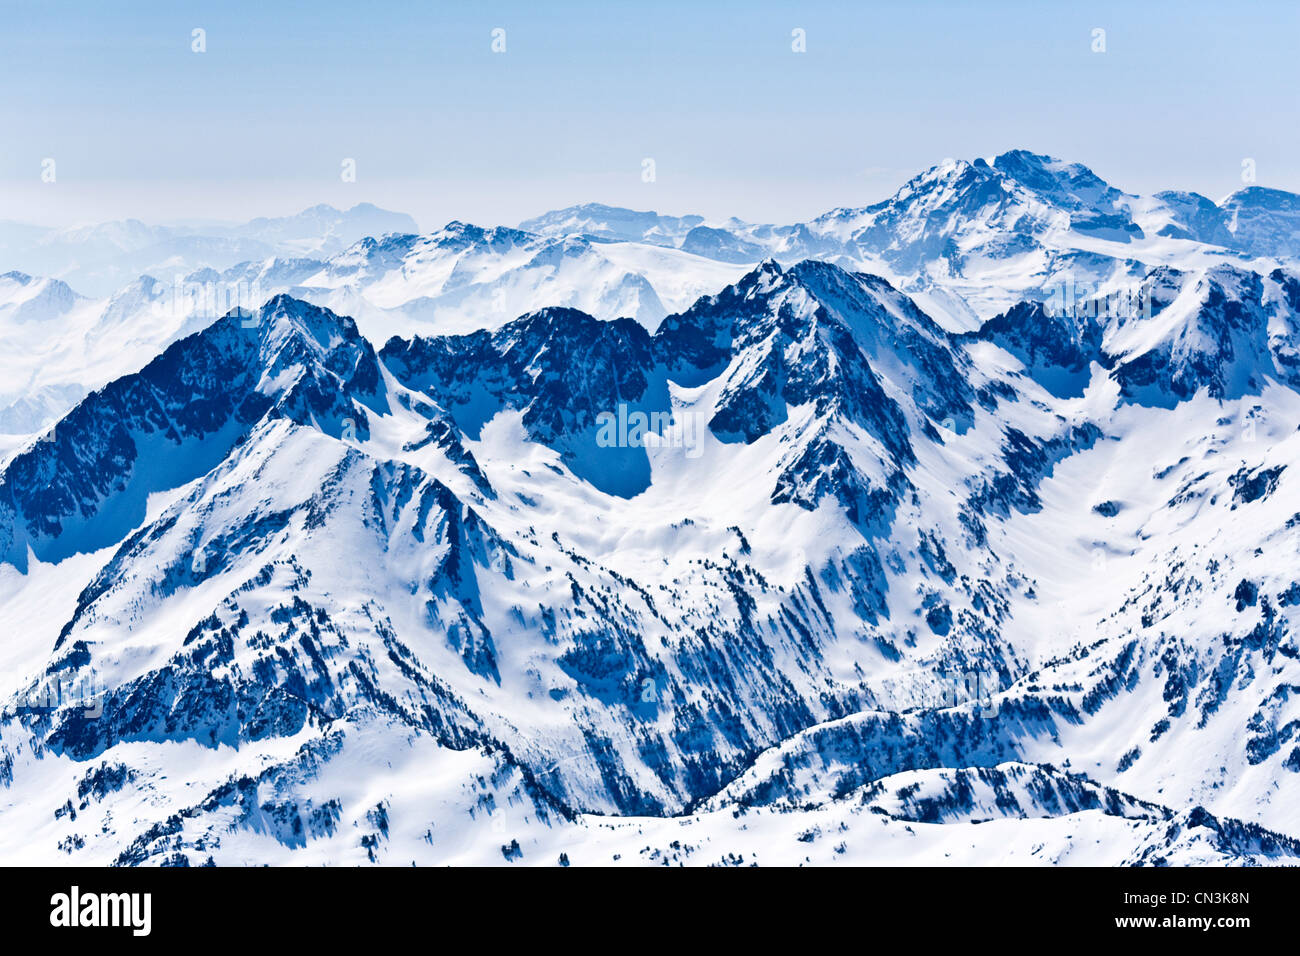 Francia, Hautes Pyrenees, Bagneres De Bigorre, cerca del Pic du Midi (vista aérea) Foto de stock